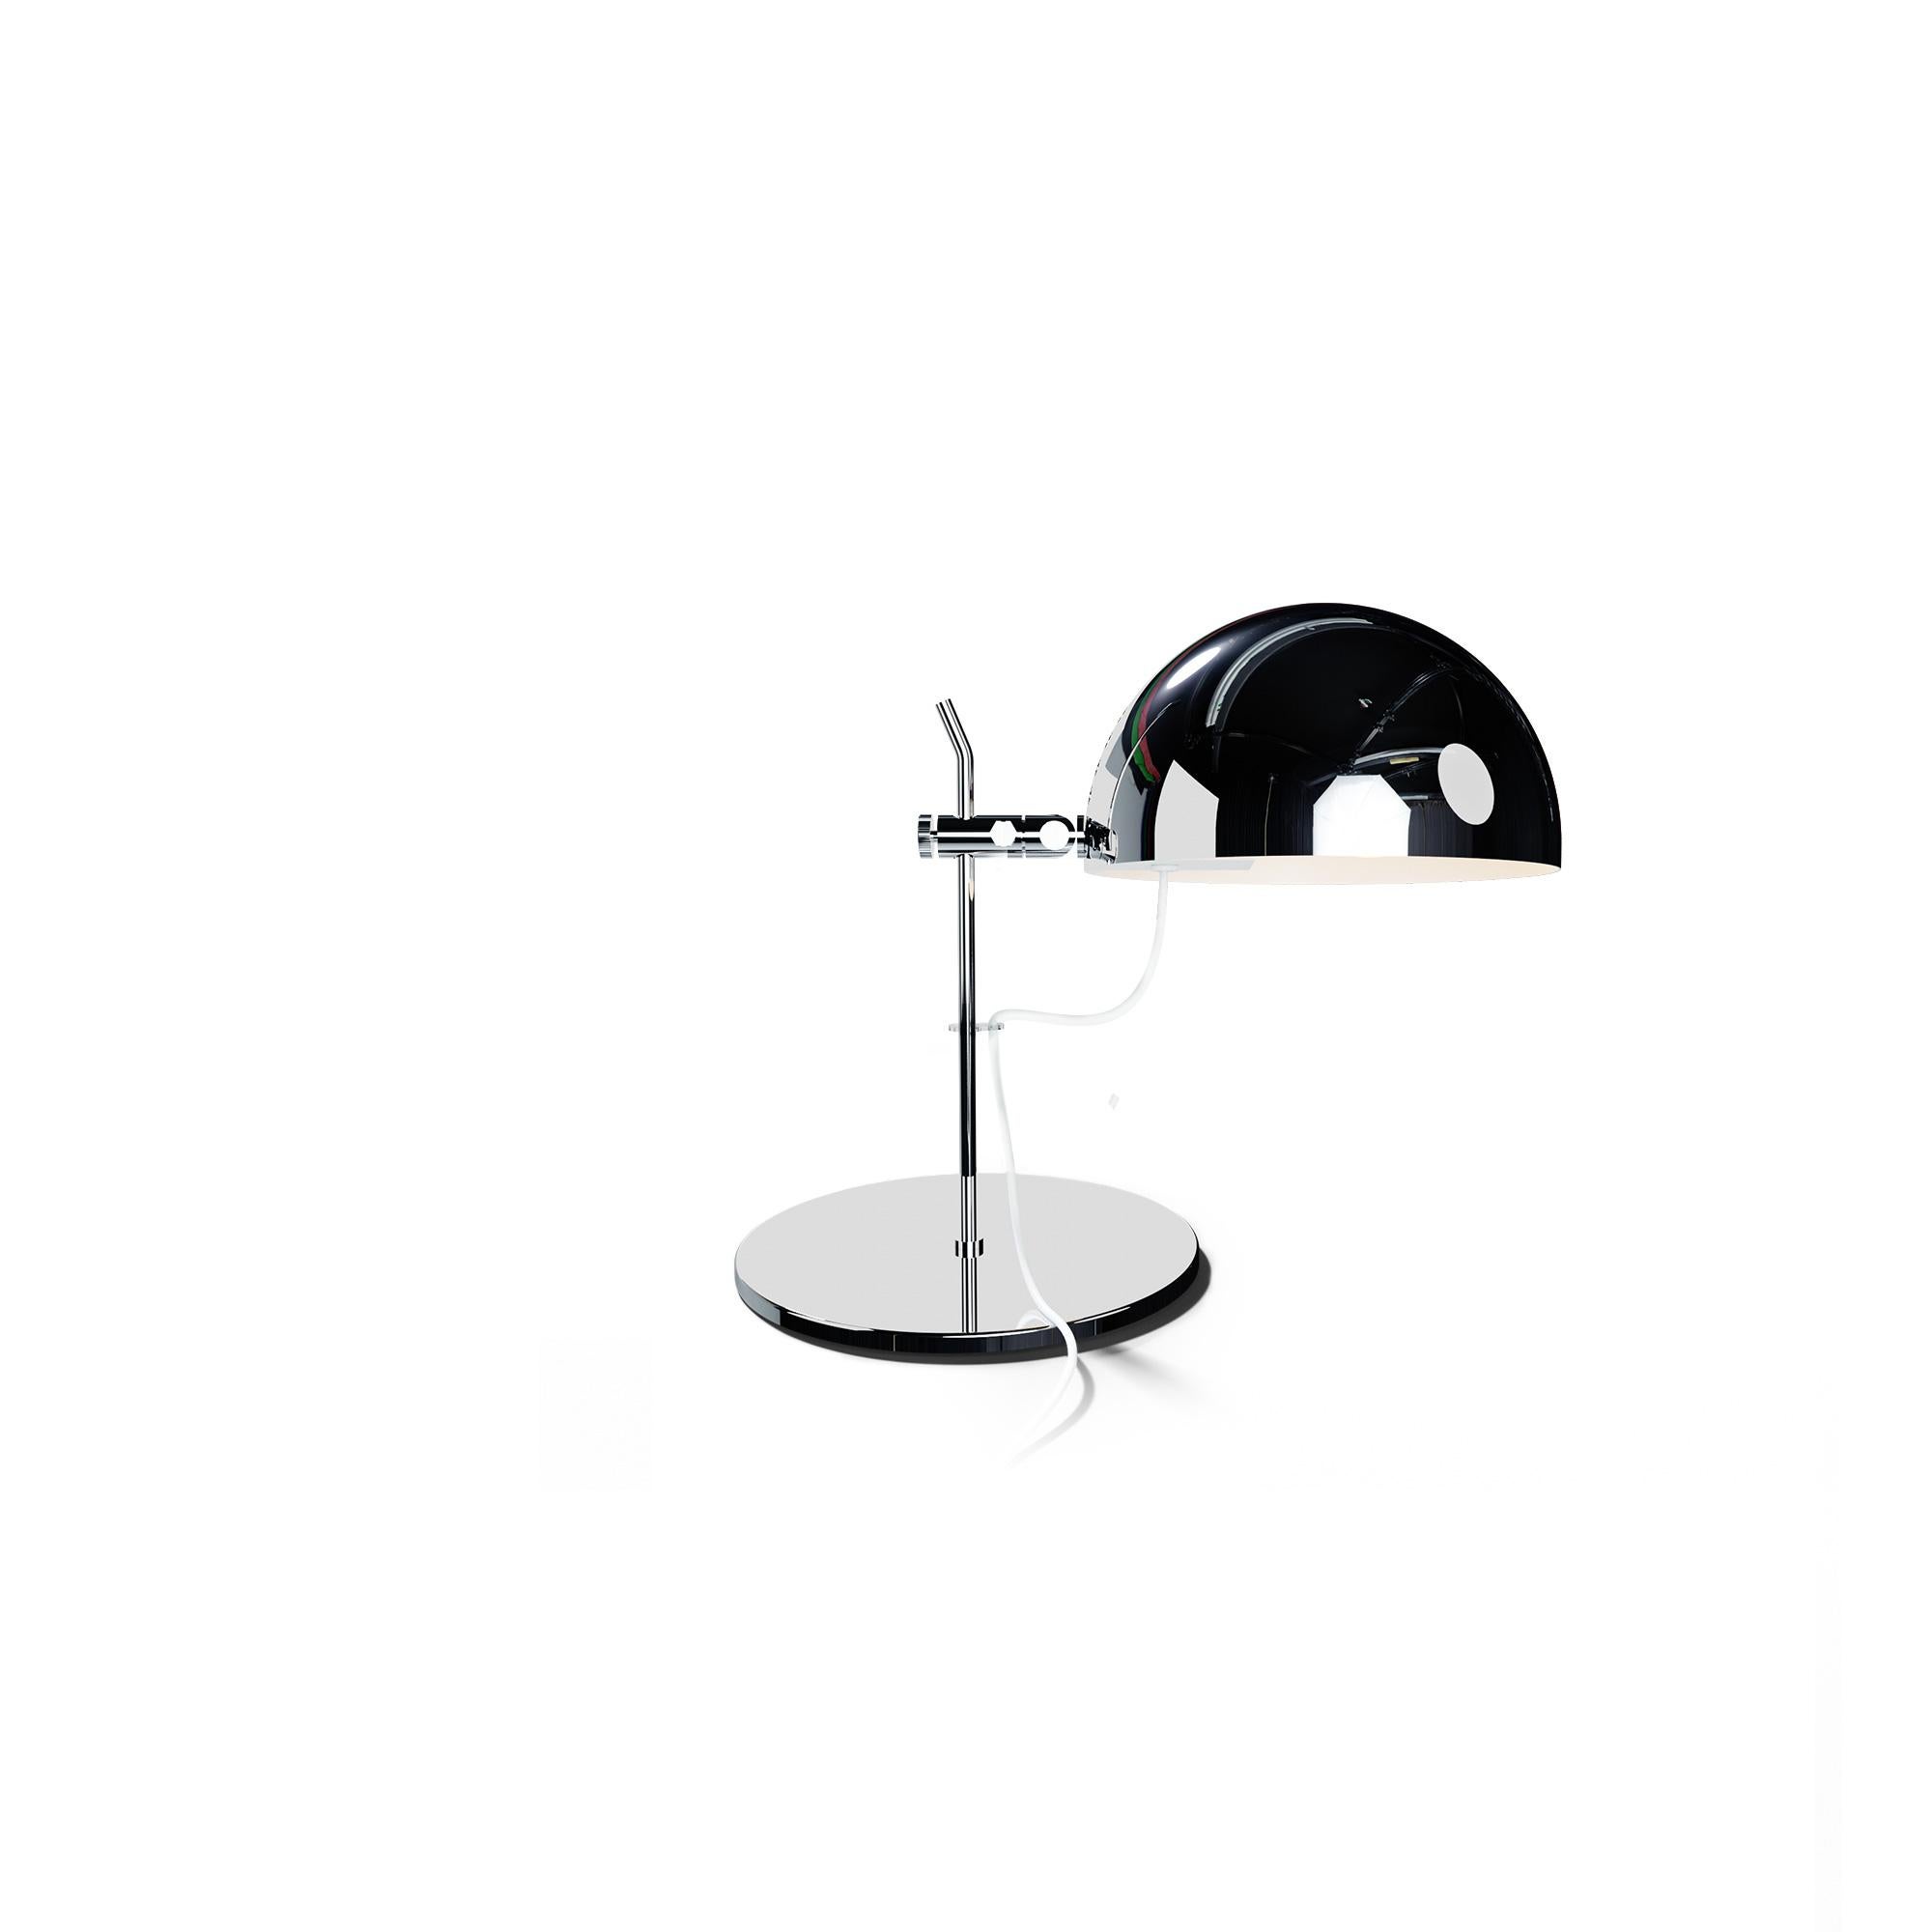 Alain Richard 'A22' Desk Lamp in White for Disderot For Sale 1